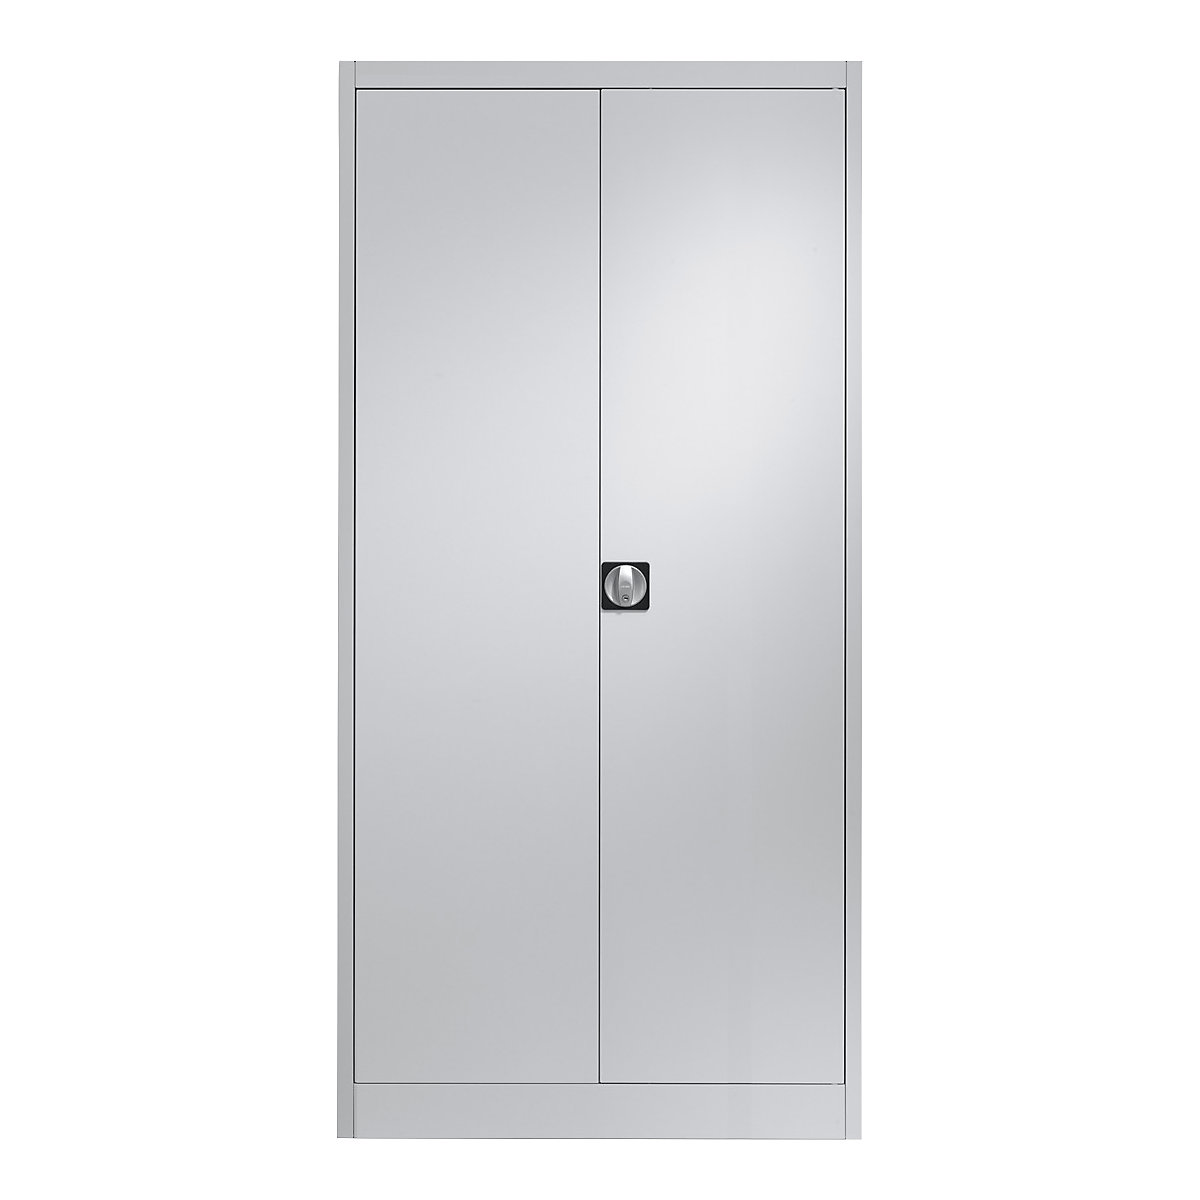 Szafa stalowa z drzwiami skrzydłowymi – mauser, 4 półki, gł. 420 mm, jasnoszary, od 2 szt.